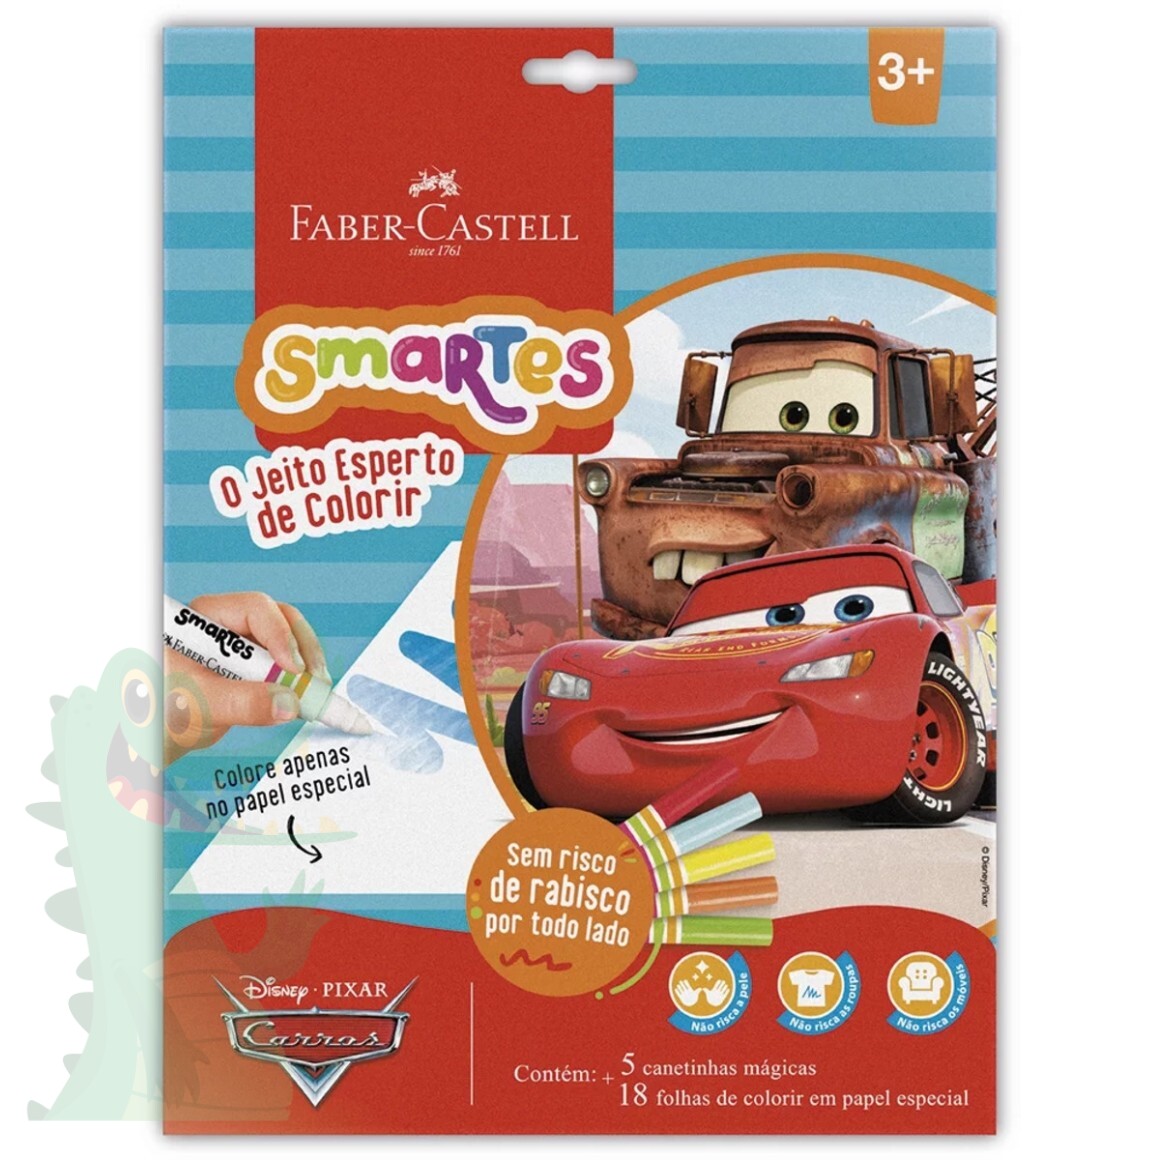 Livro - Disney Pixar - Carros 3 - Livro de jogos especial - Jogo